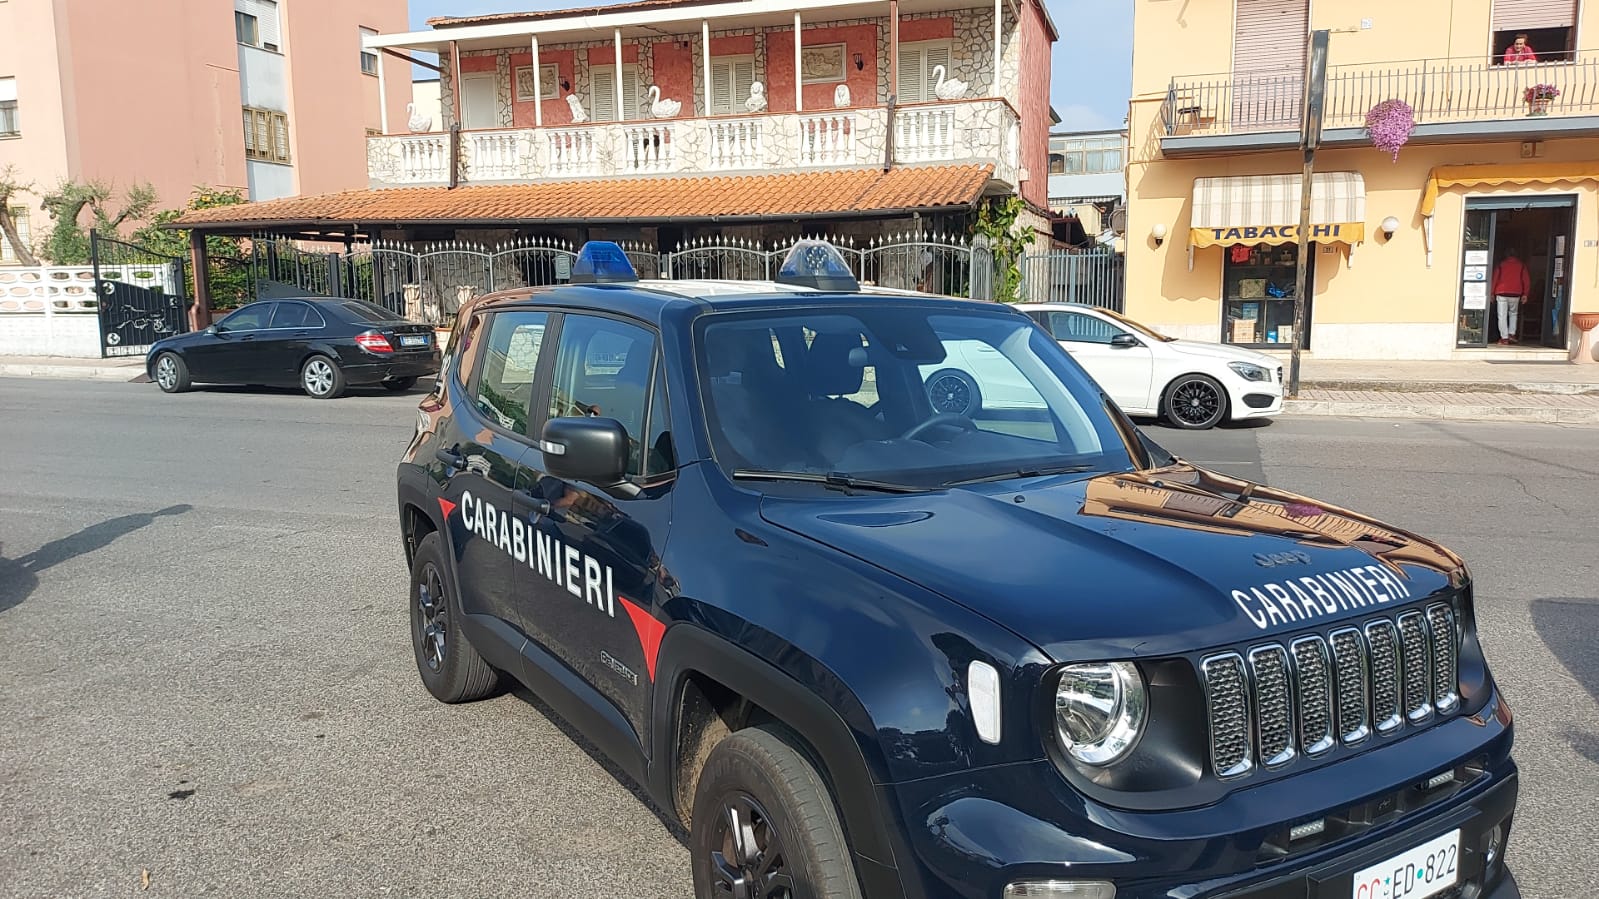 Casa stupefacente a Latina, intervento dei Carabinieri